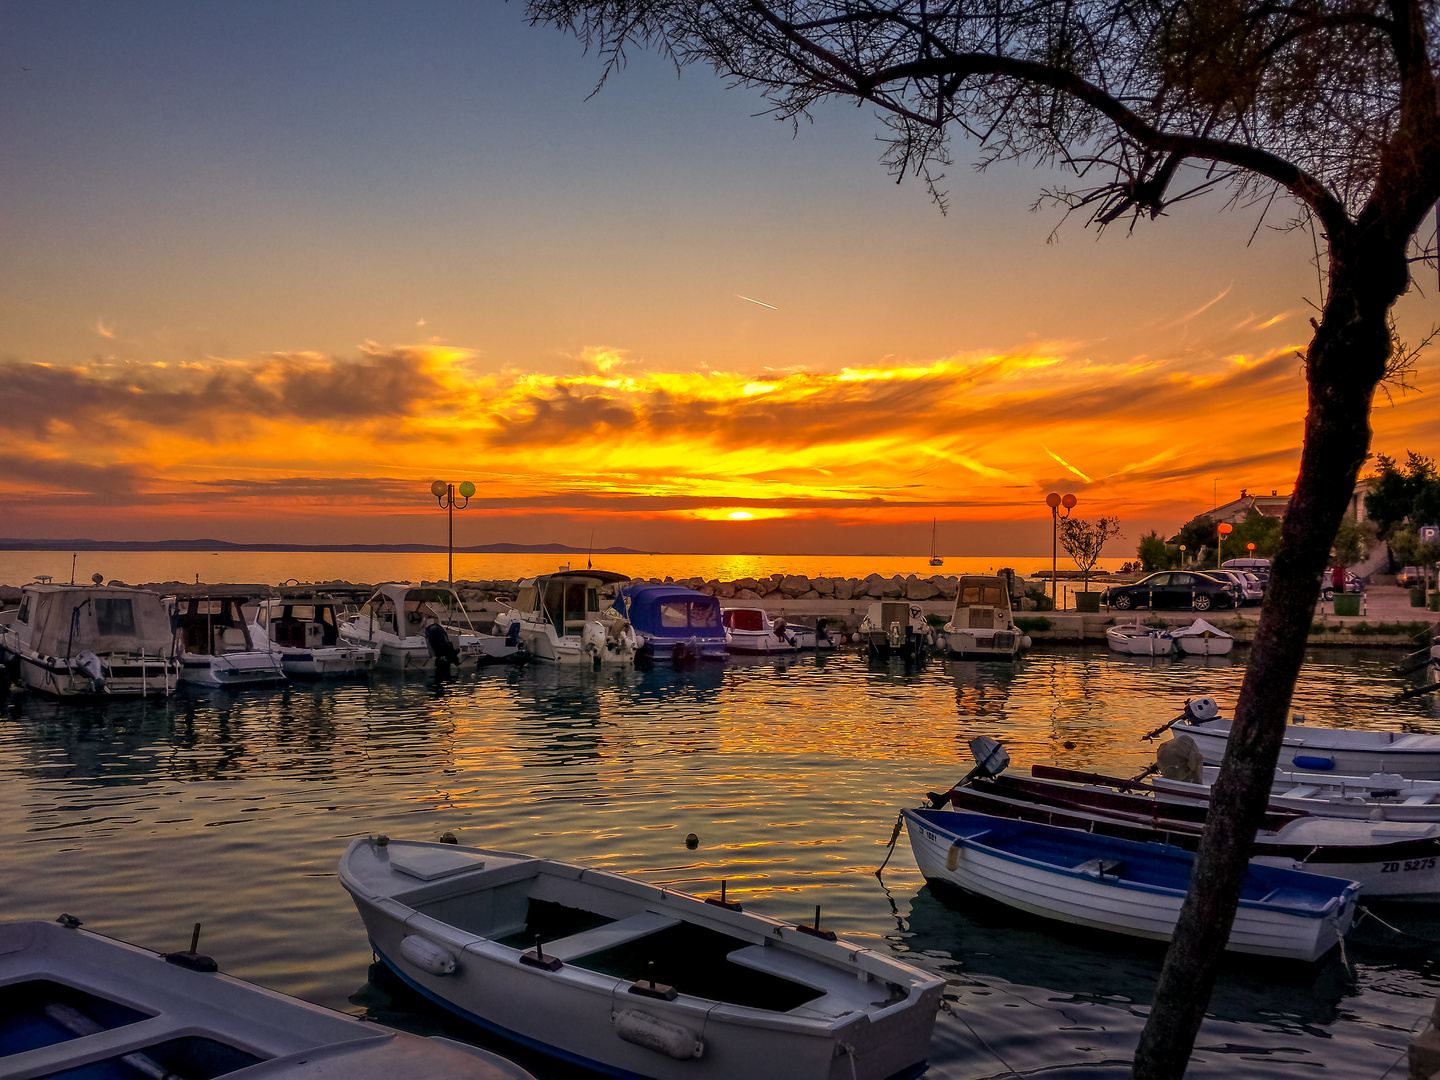 Sundown in Croatia